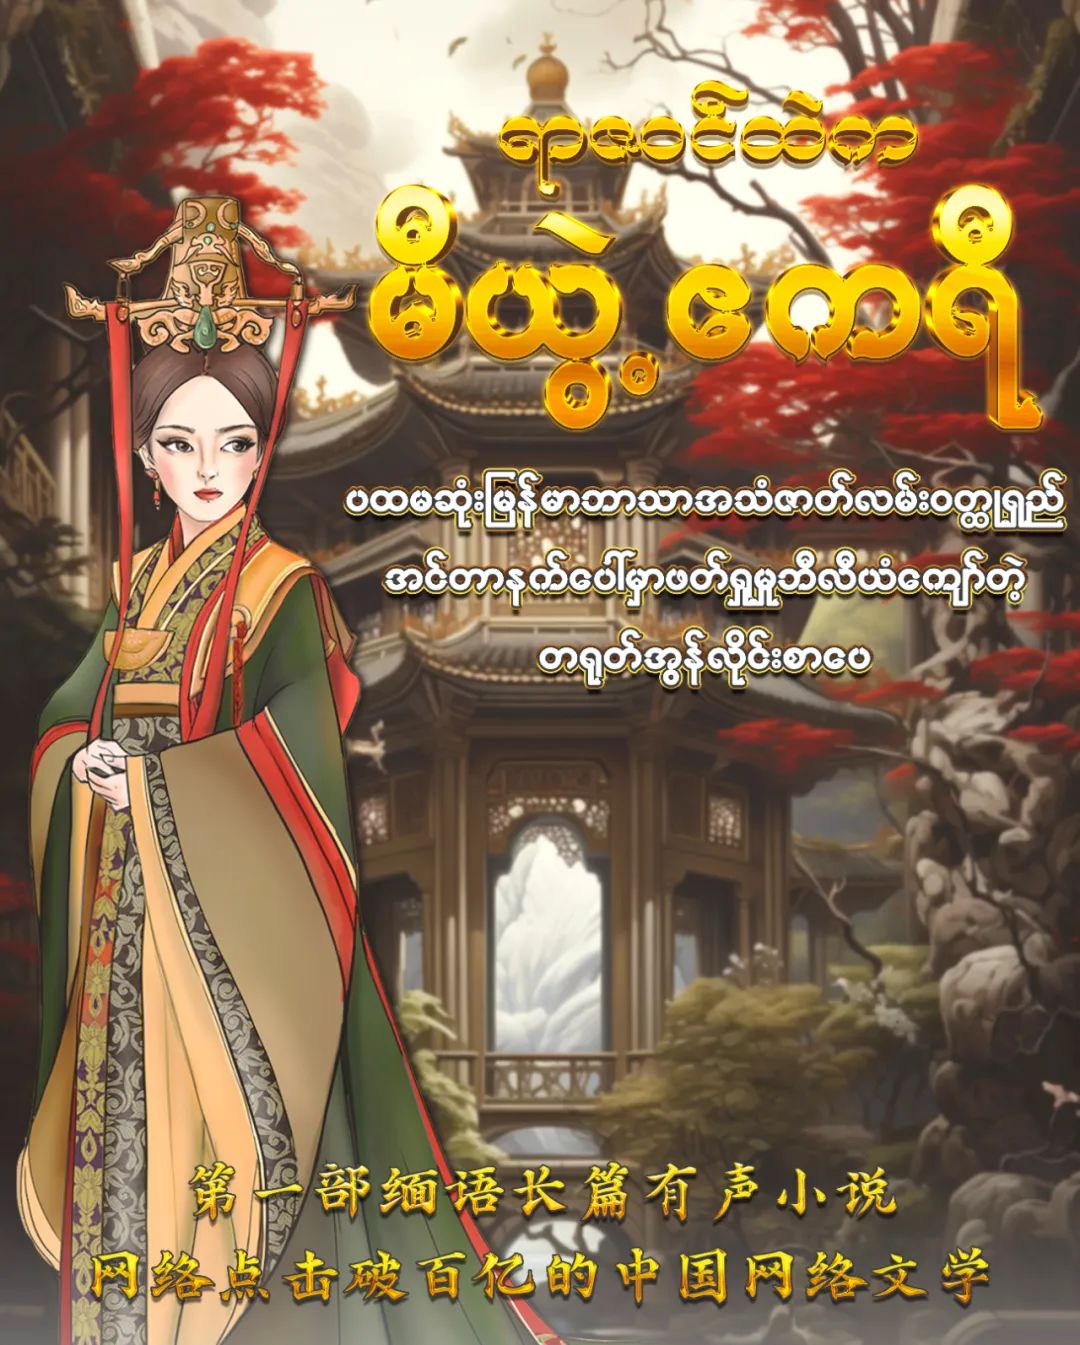 《芈月传》缅甸语海报